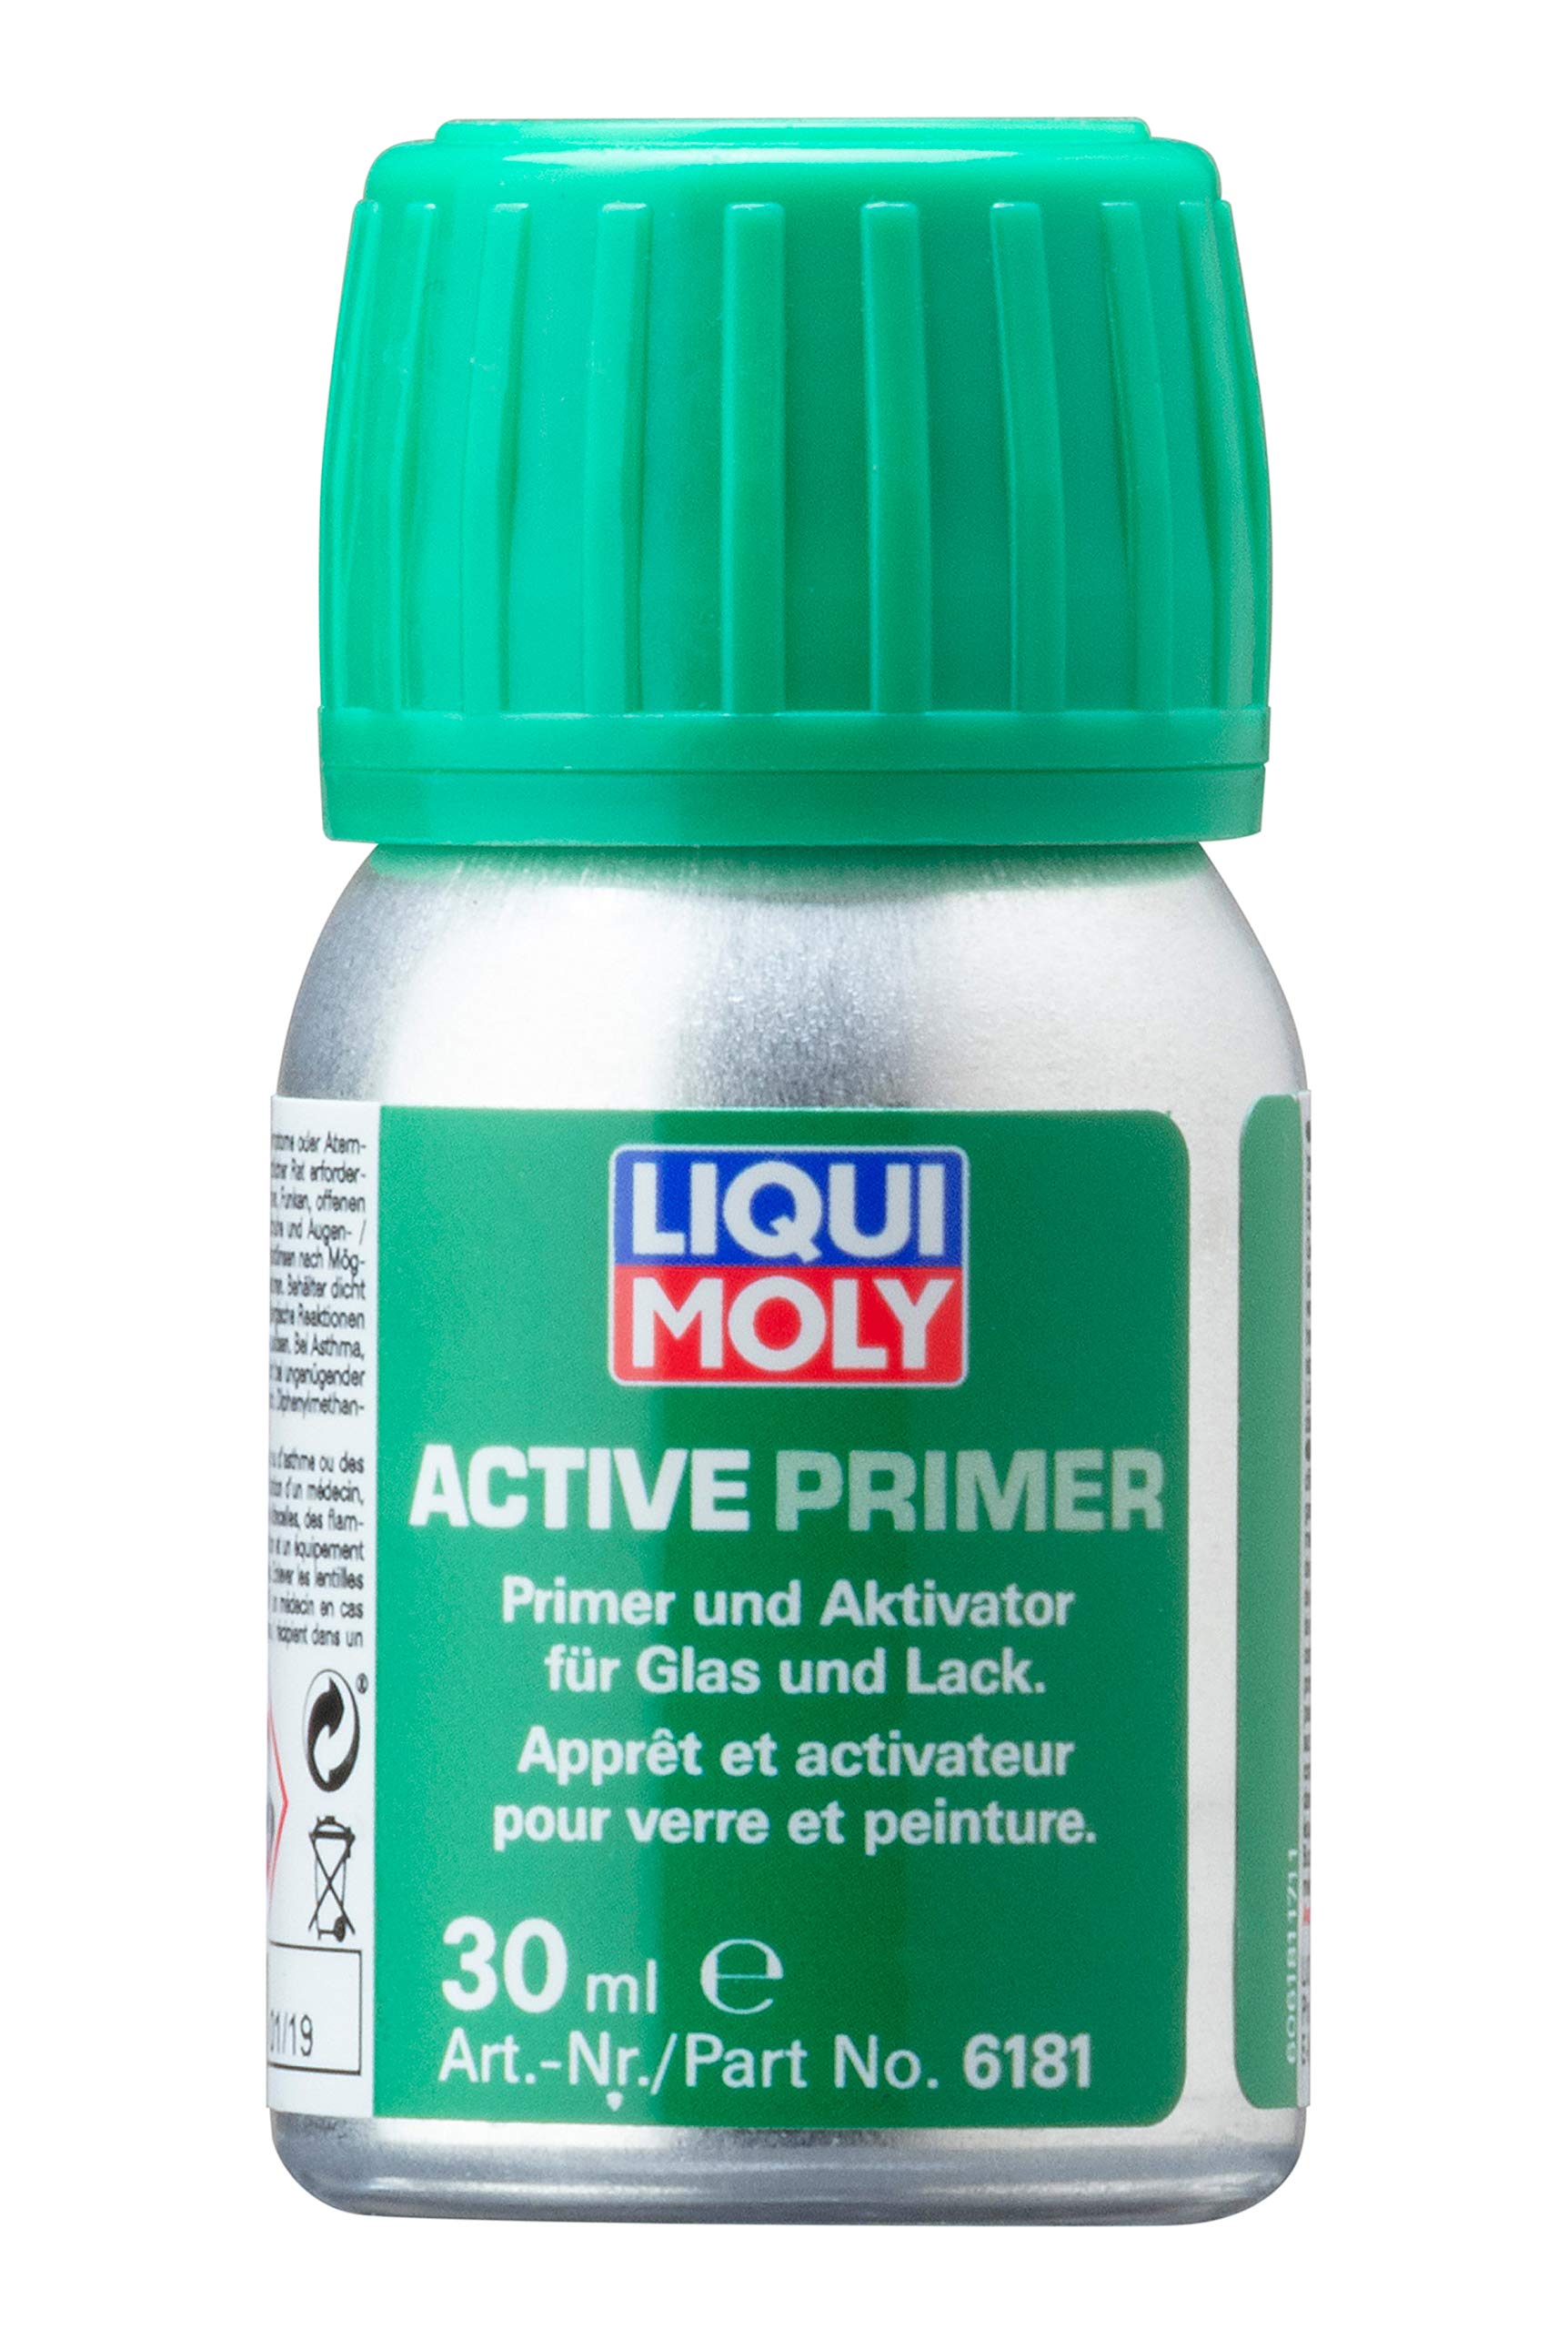 LIQUI MOLY Active Primer | 30 ml | Klebstoff | Art.-Nr.: 6181 von Liqui Moly